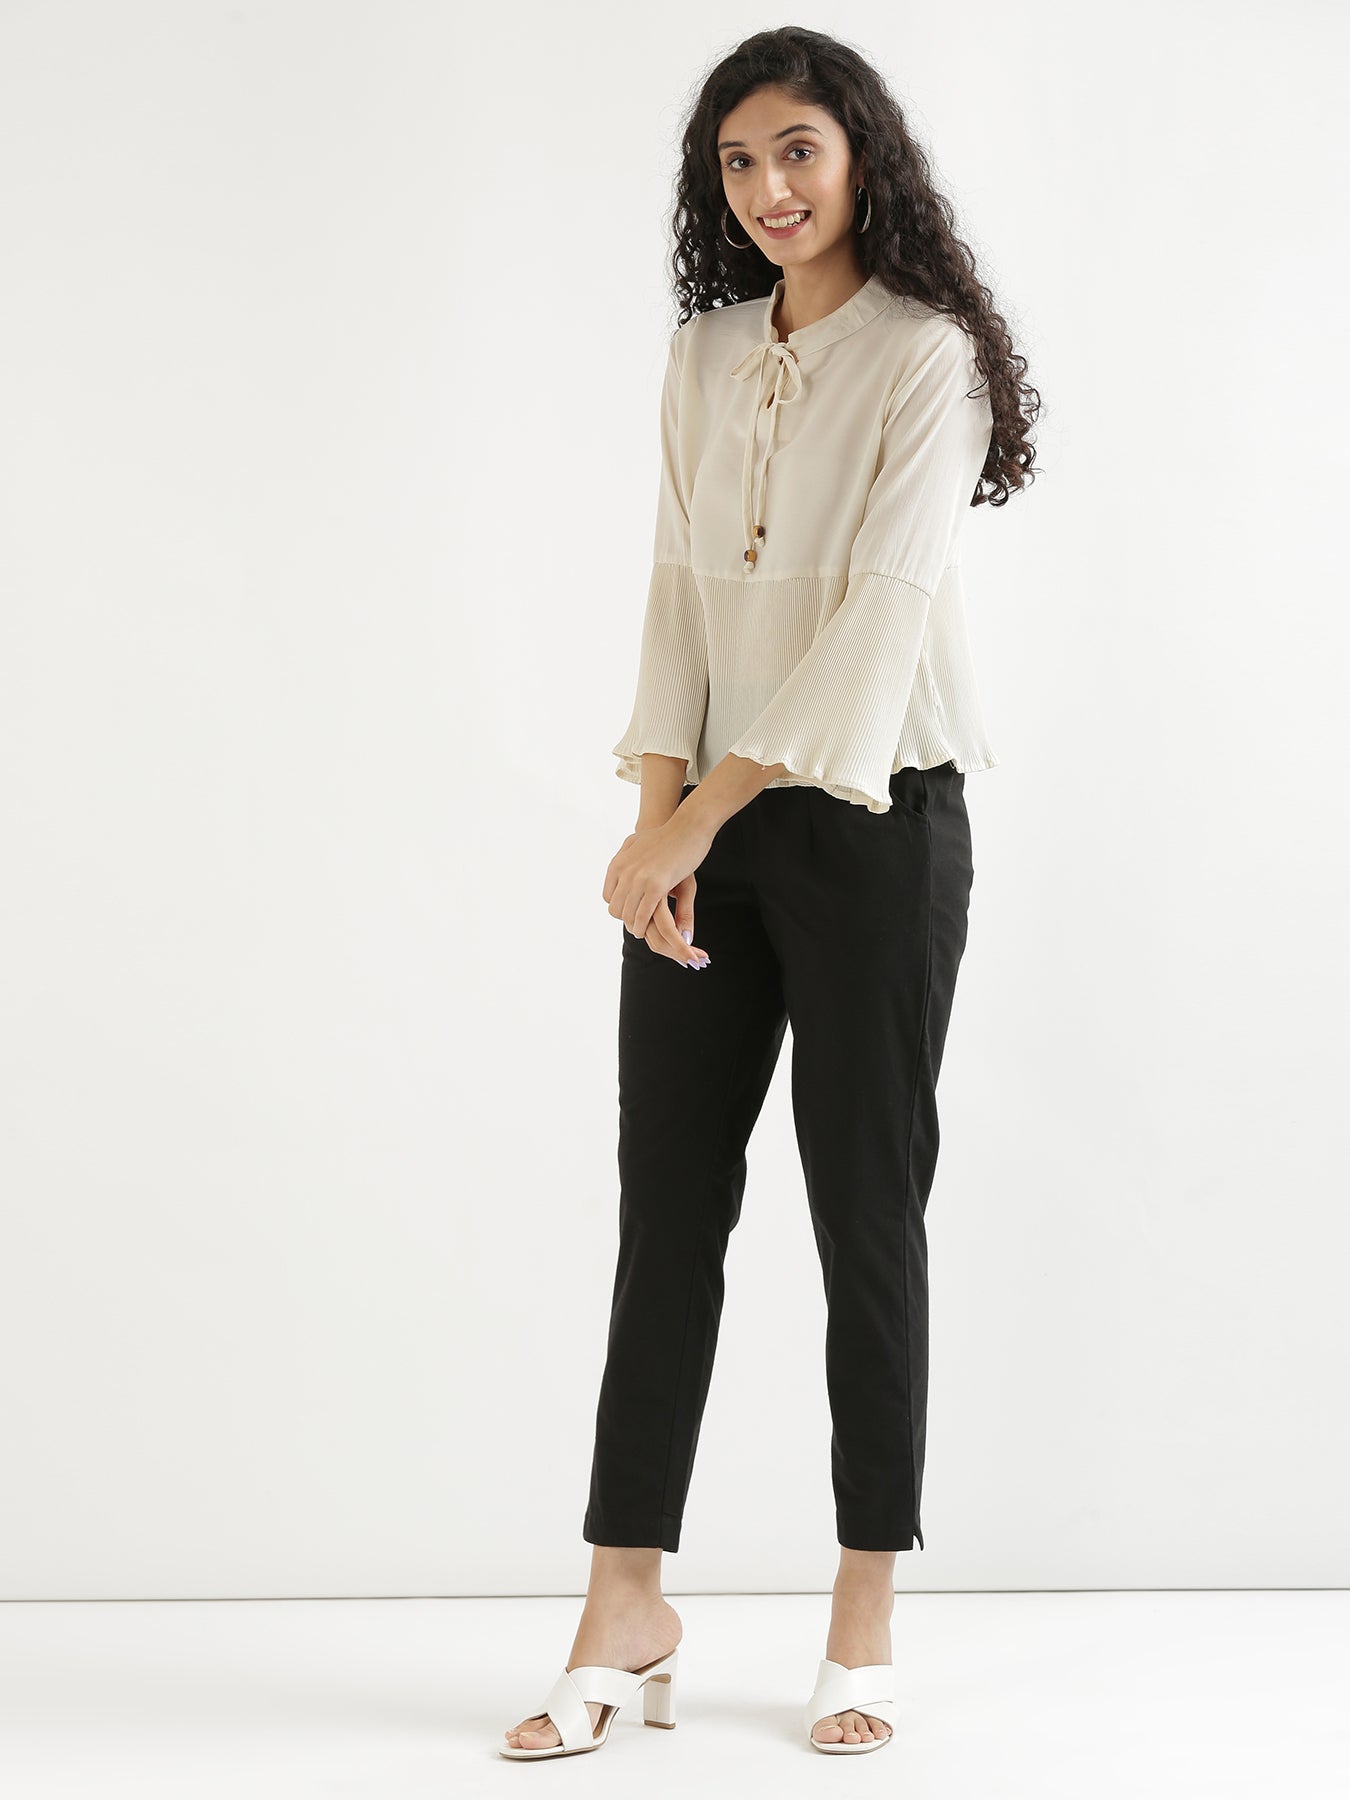 Buy GO COLORS Women Black Solid 100% Cotton Pants Online at Best